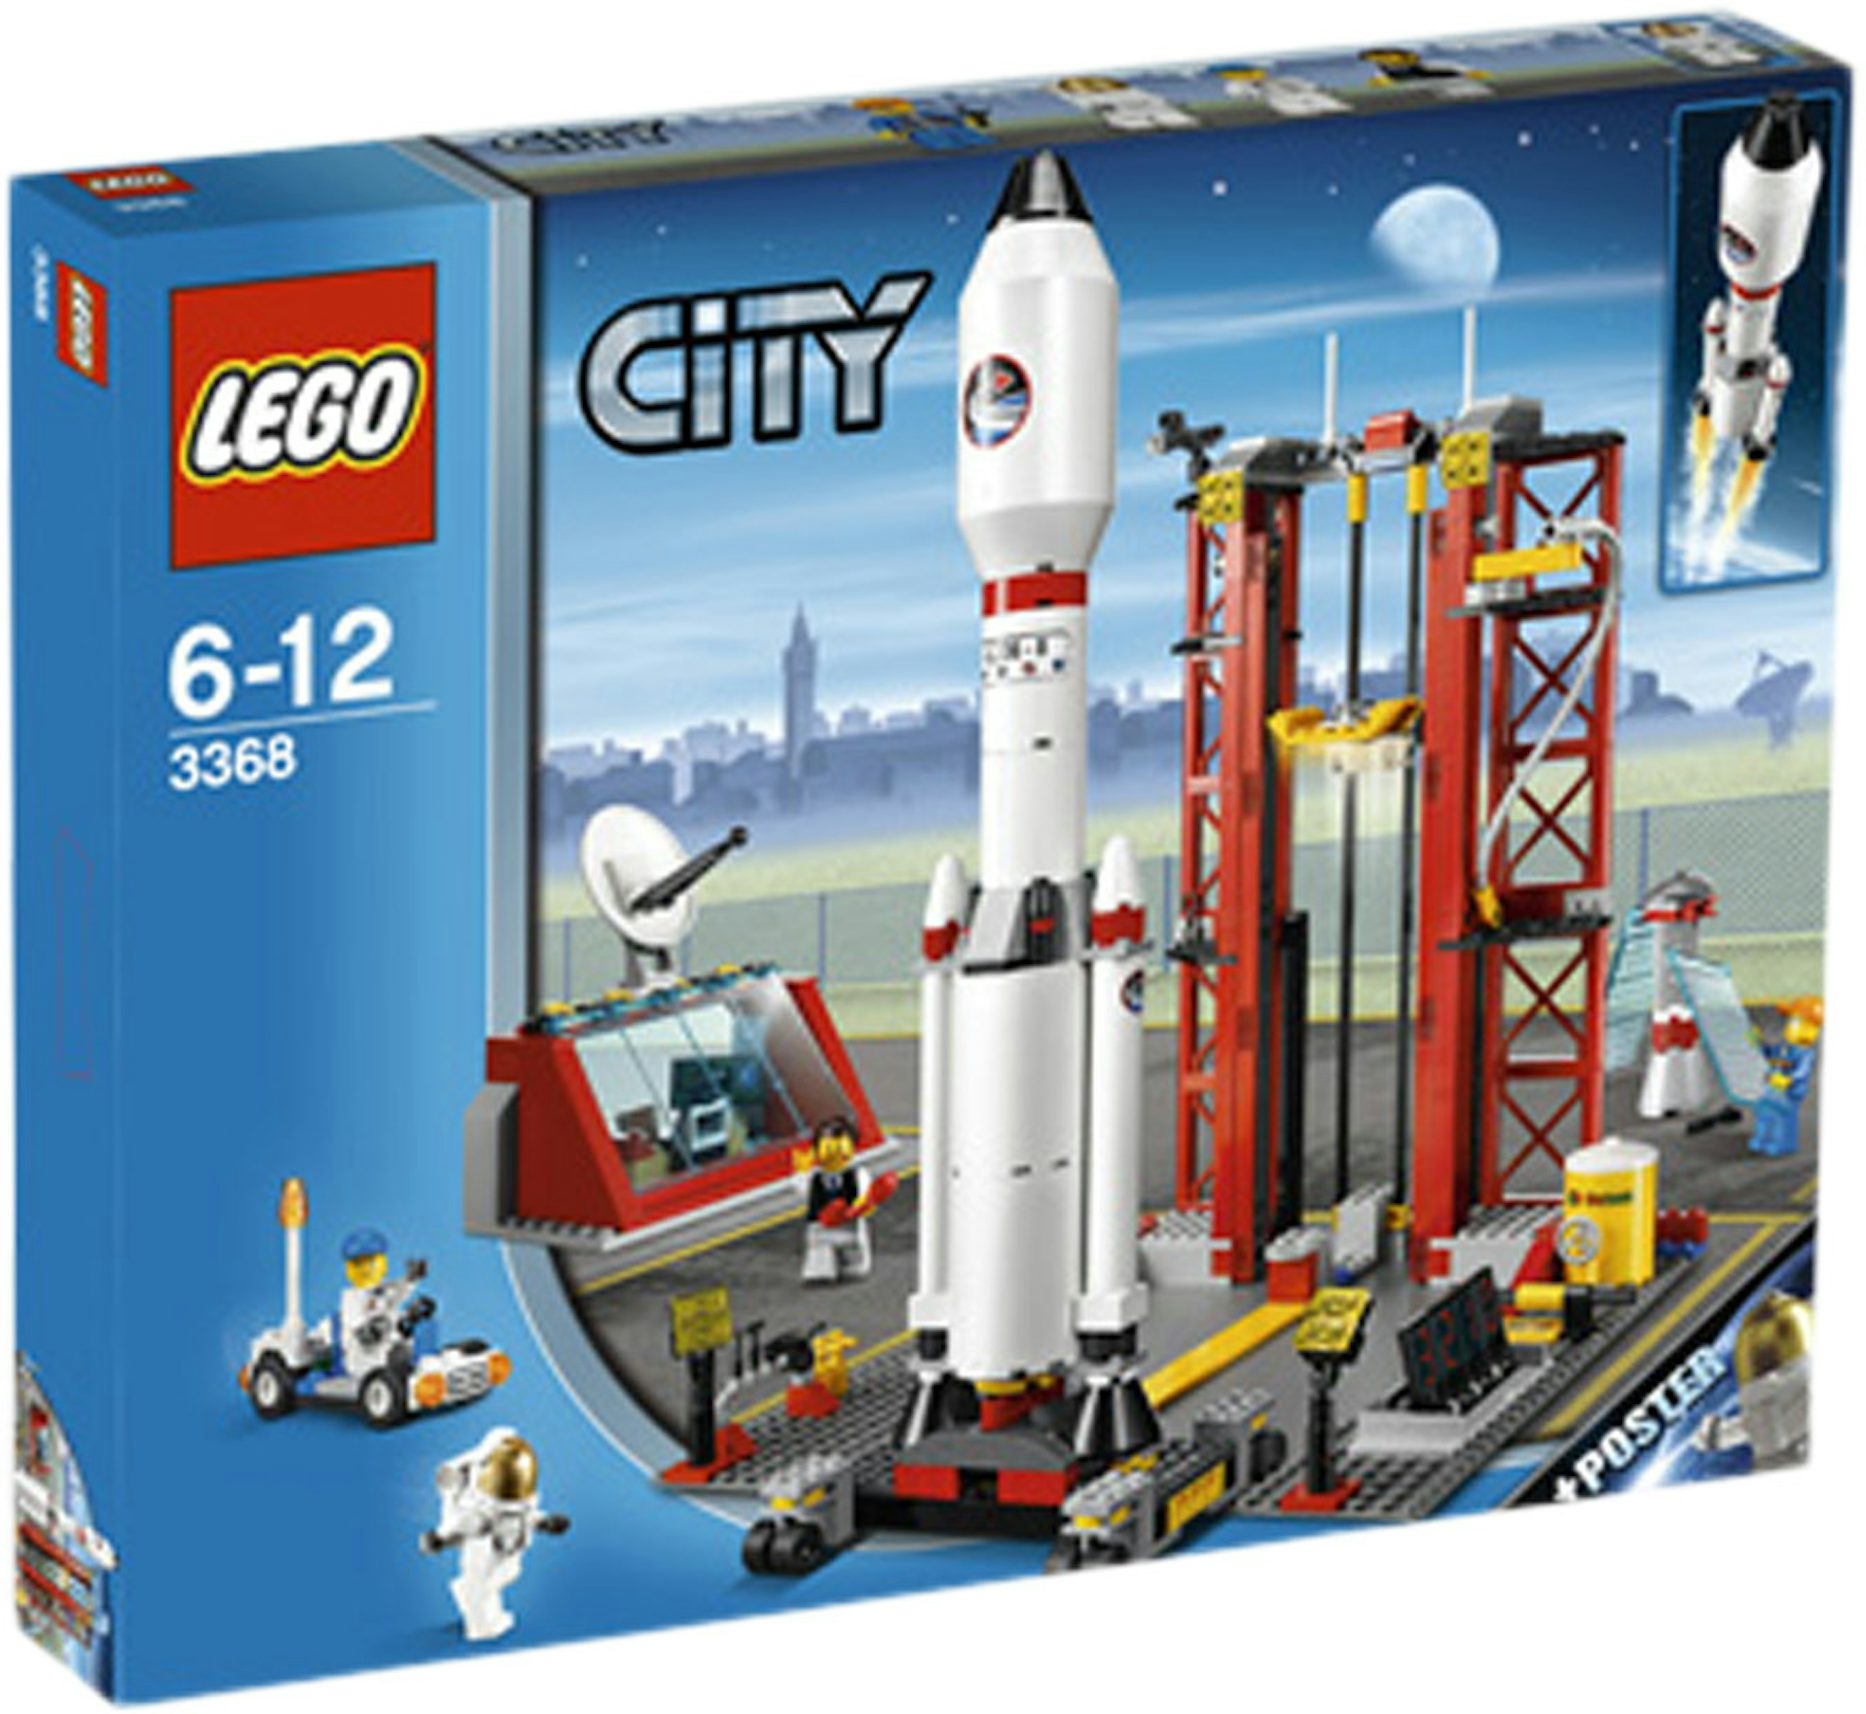 LEGO City Space Centre Set 3368 - US